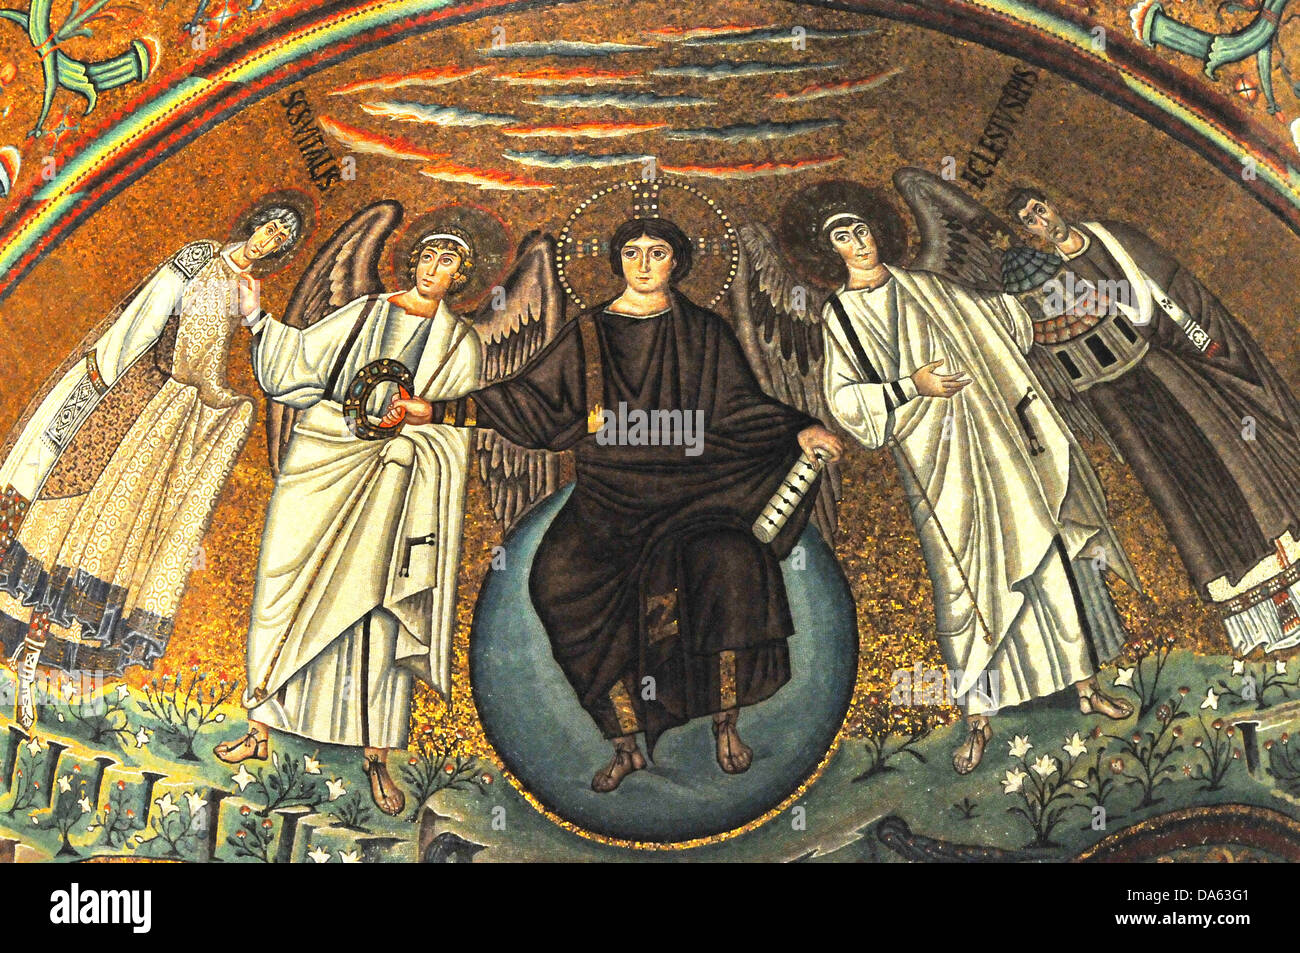 Capolavoro di mosaico dell'Abside dell'UNESCO di cui basilica di Sta vitalis, Ravenna, Italia. Mostra Cristo giovane e enthron Foto Stock